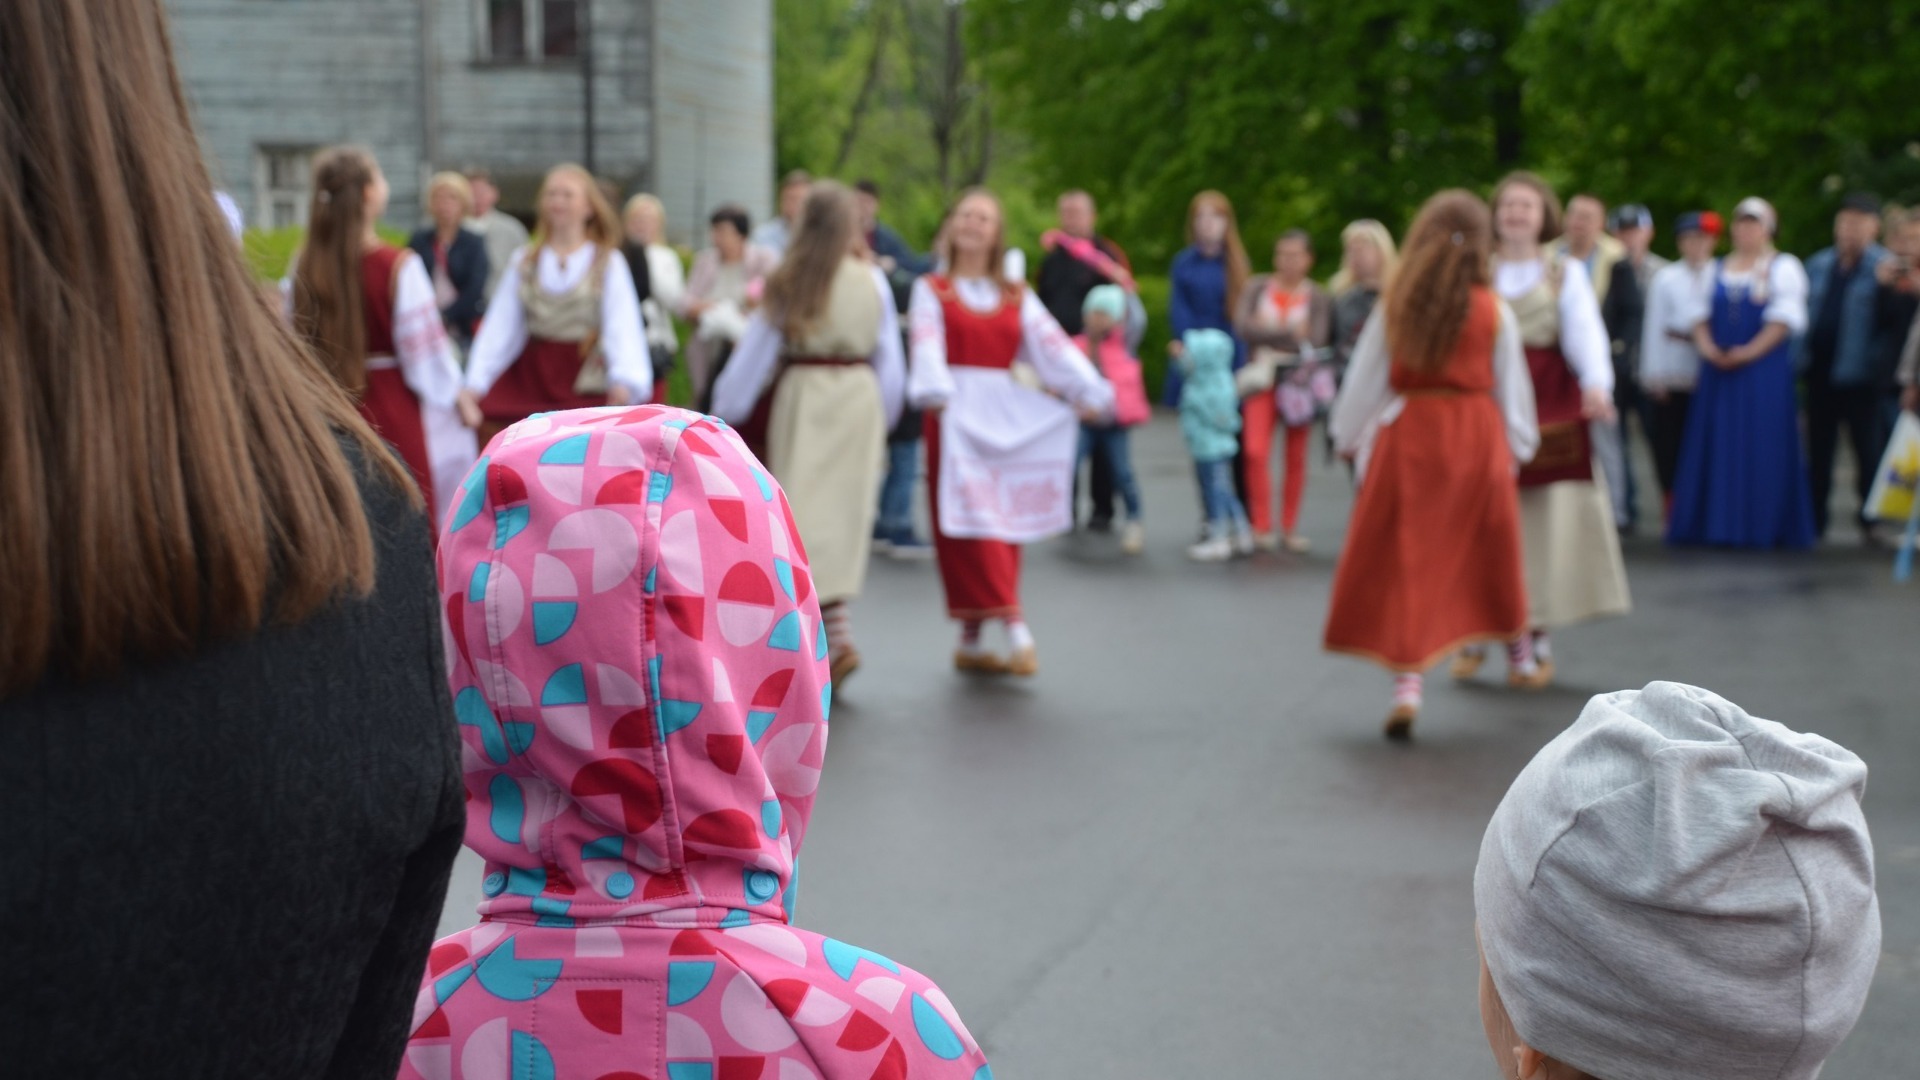 Хореограф школы искусств оскорбляла и поднимала руку на детей в Нижнем Новгороде